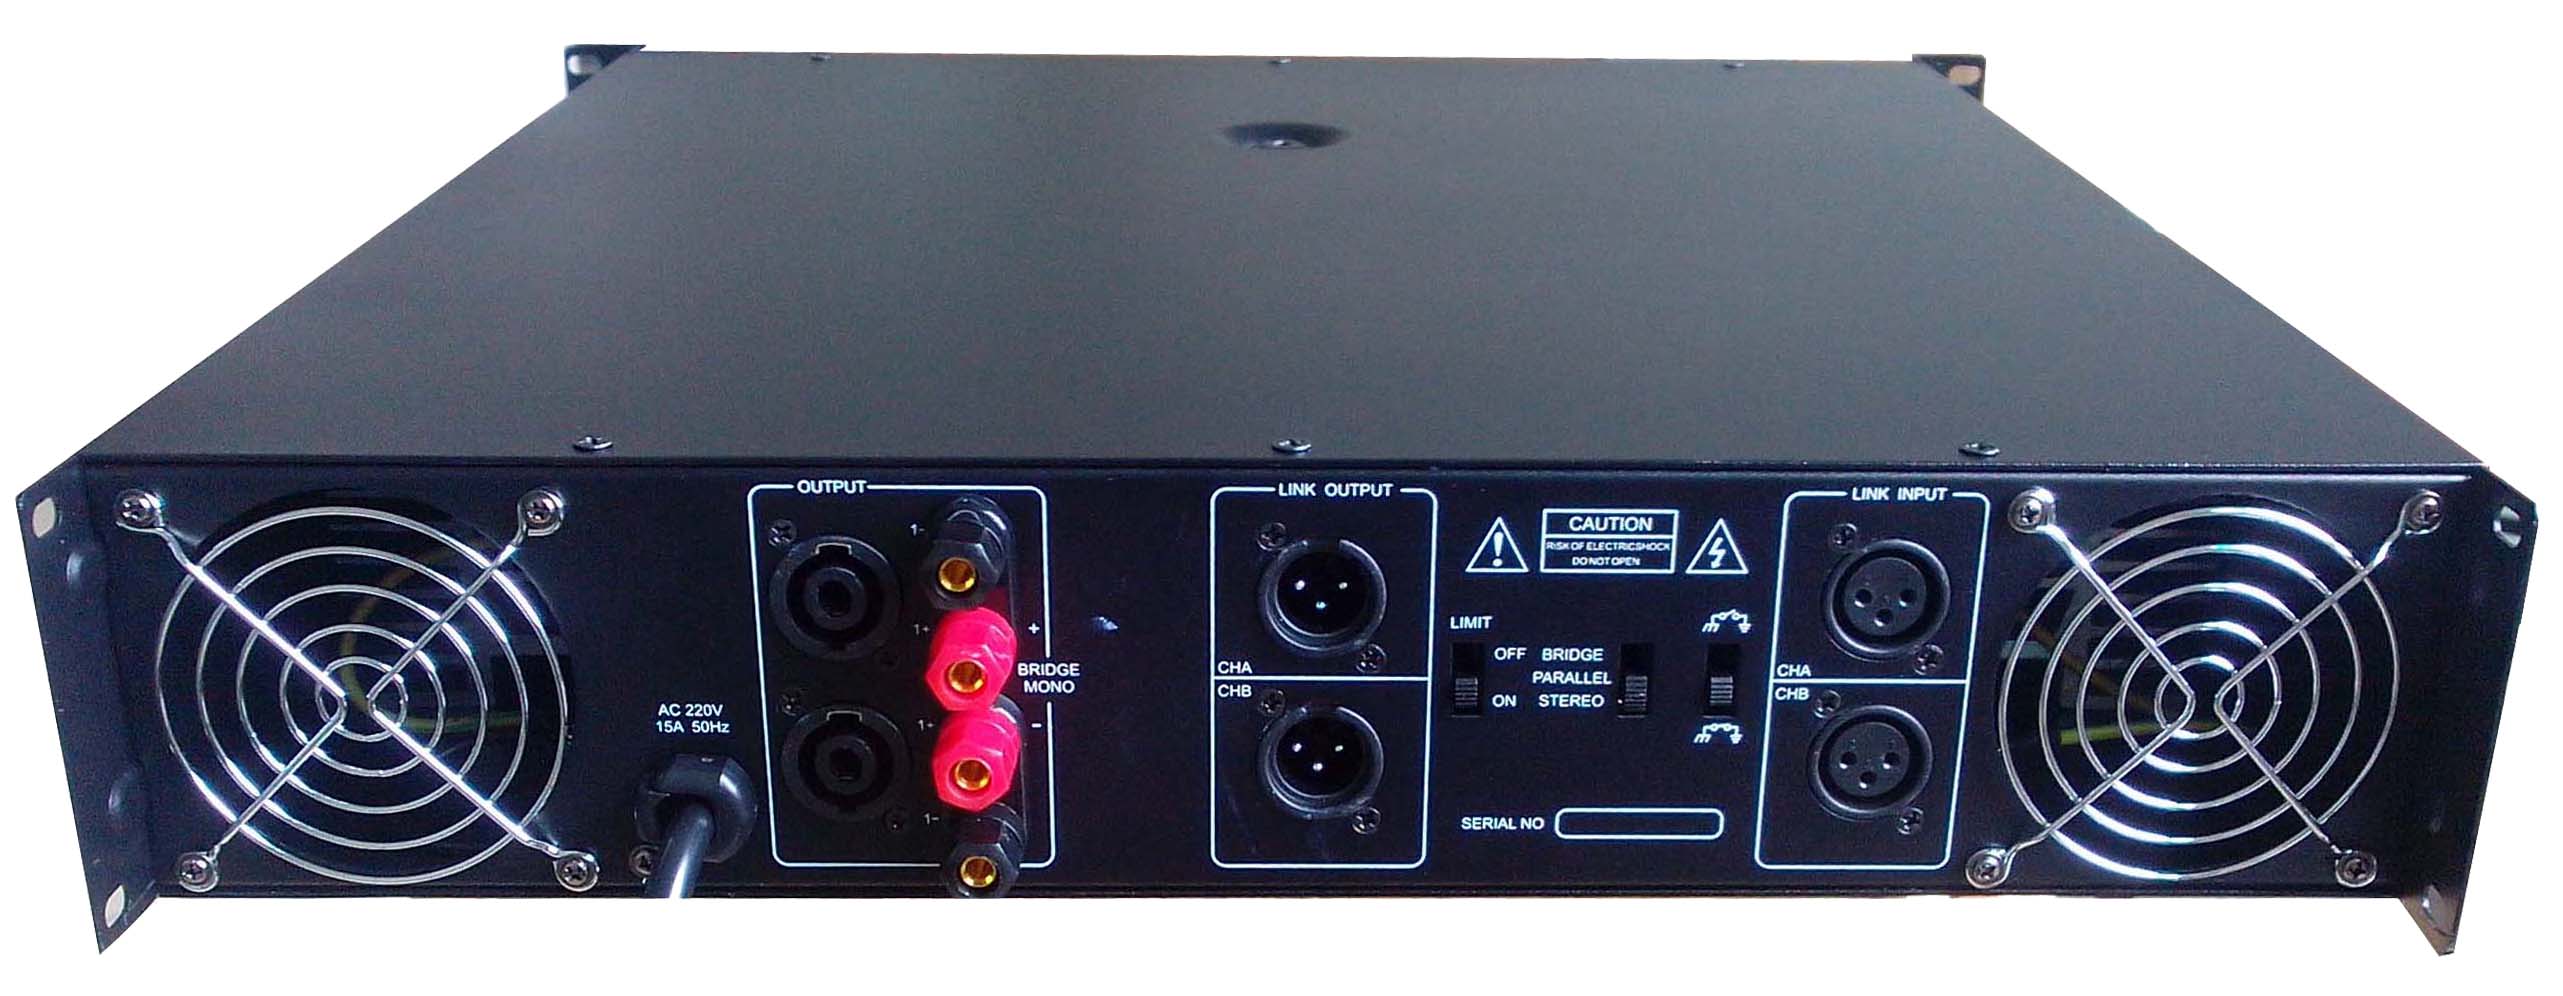 Amplificador de potencia Mosfet profesional F1000 2 CH